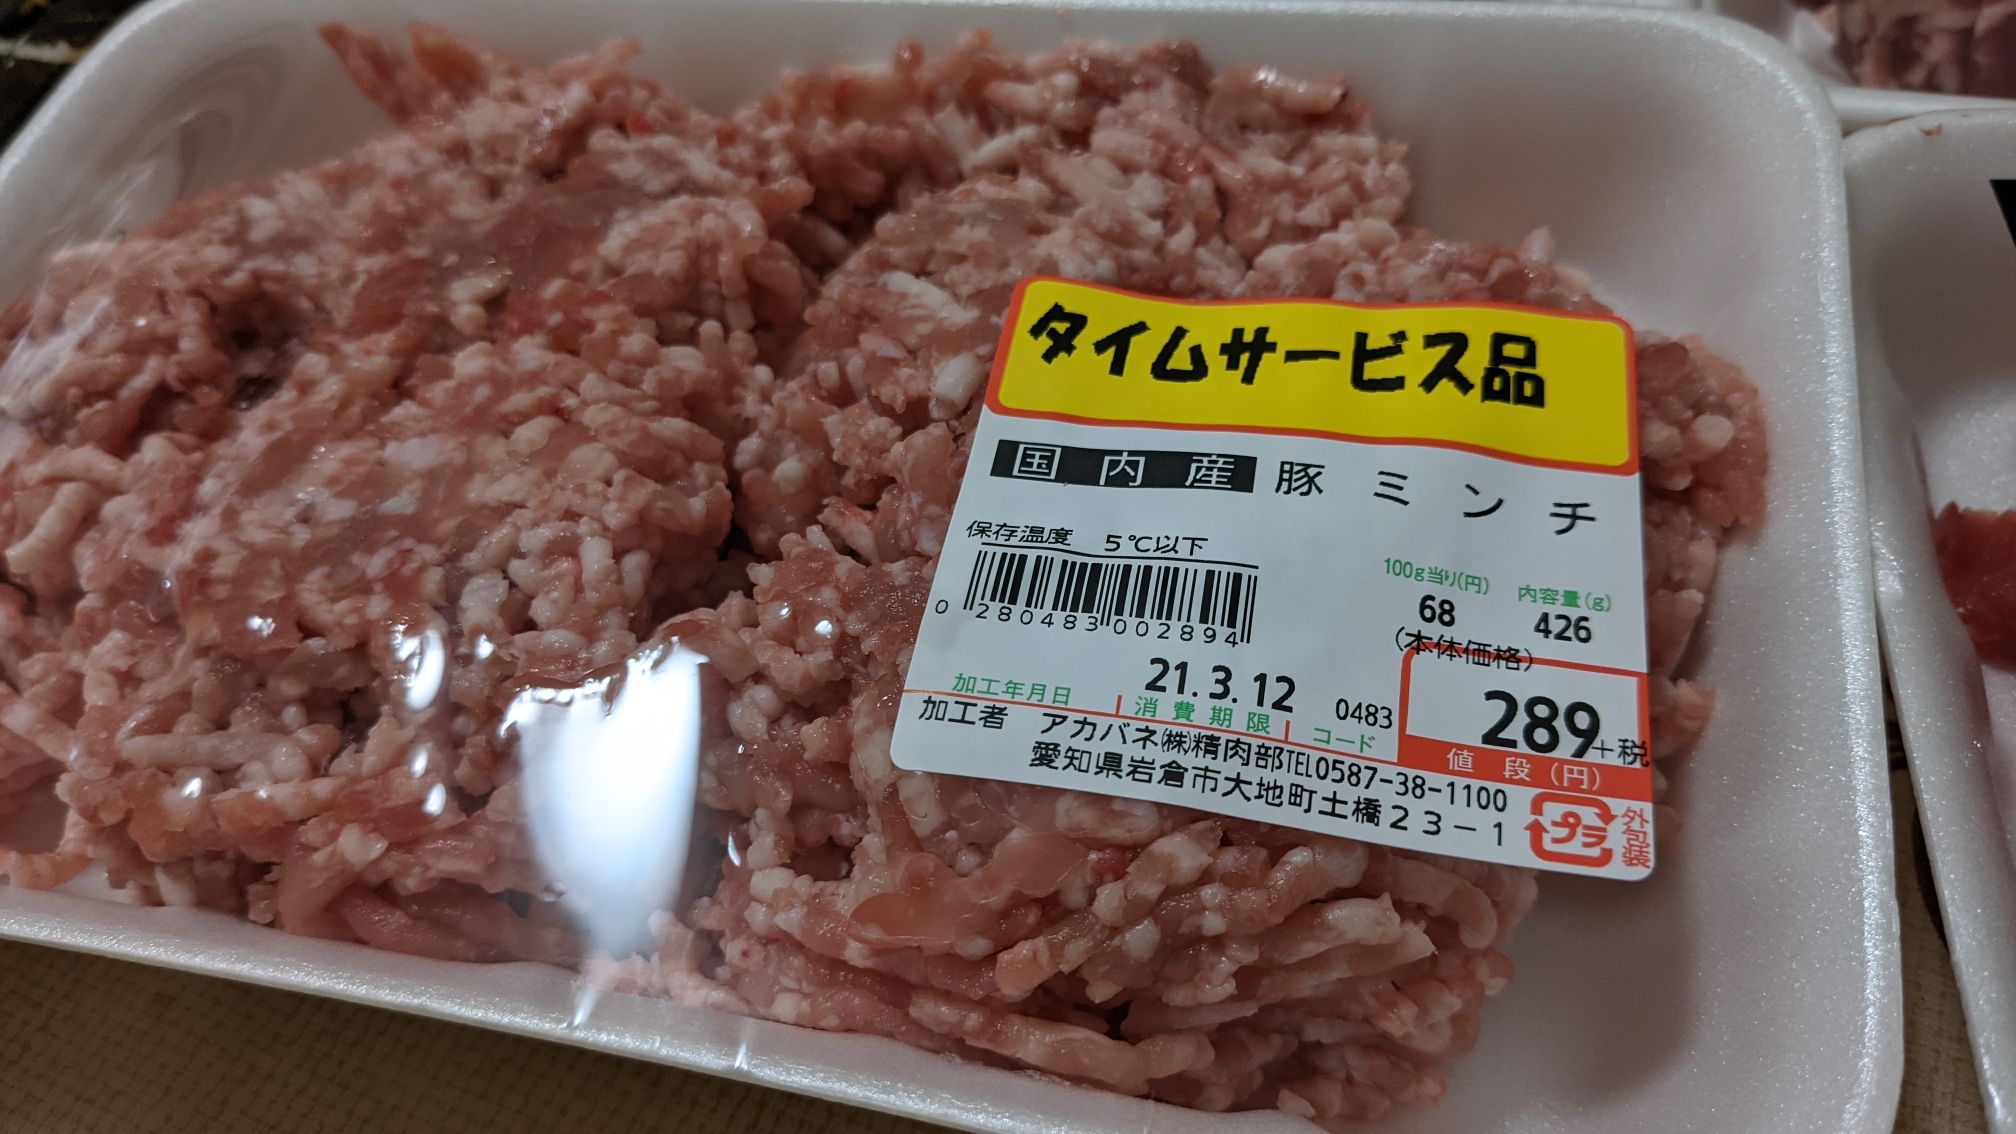 やまひこスーパー岩倉店の肉